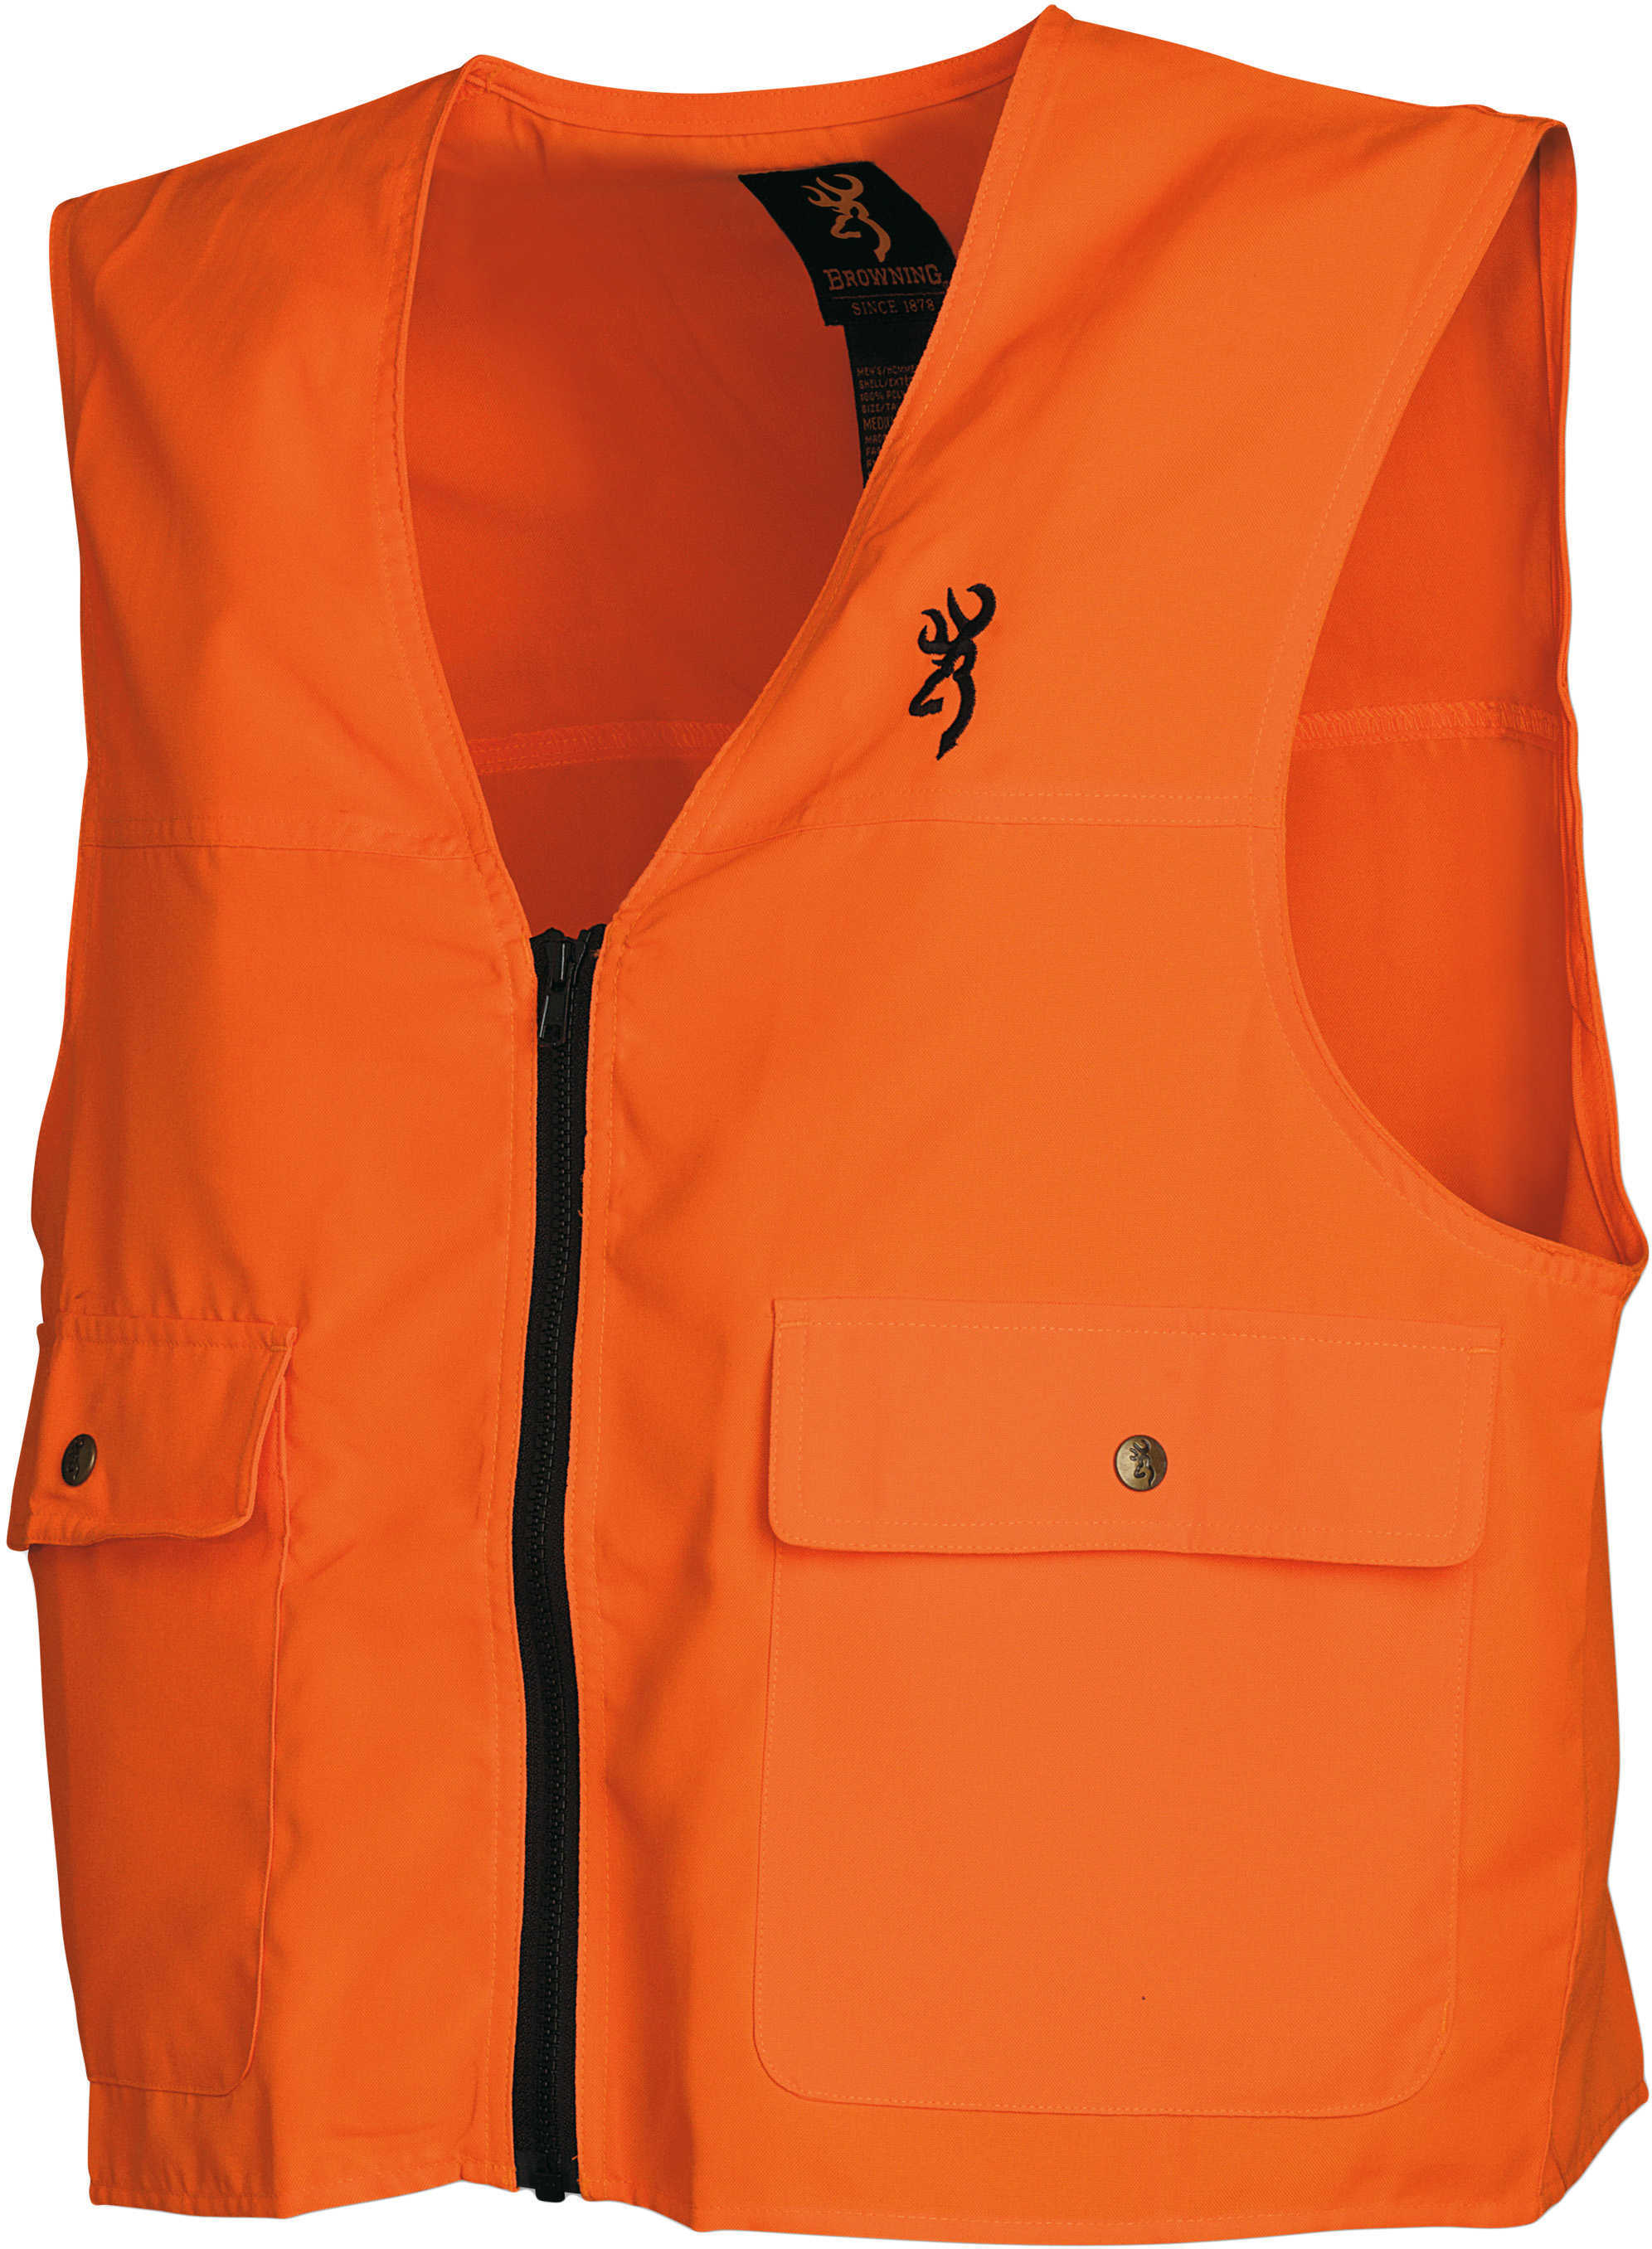 Browning Safety Vest Blaze 2X Md: 3051000105